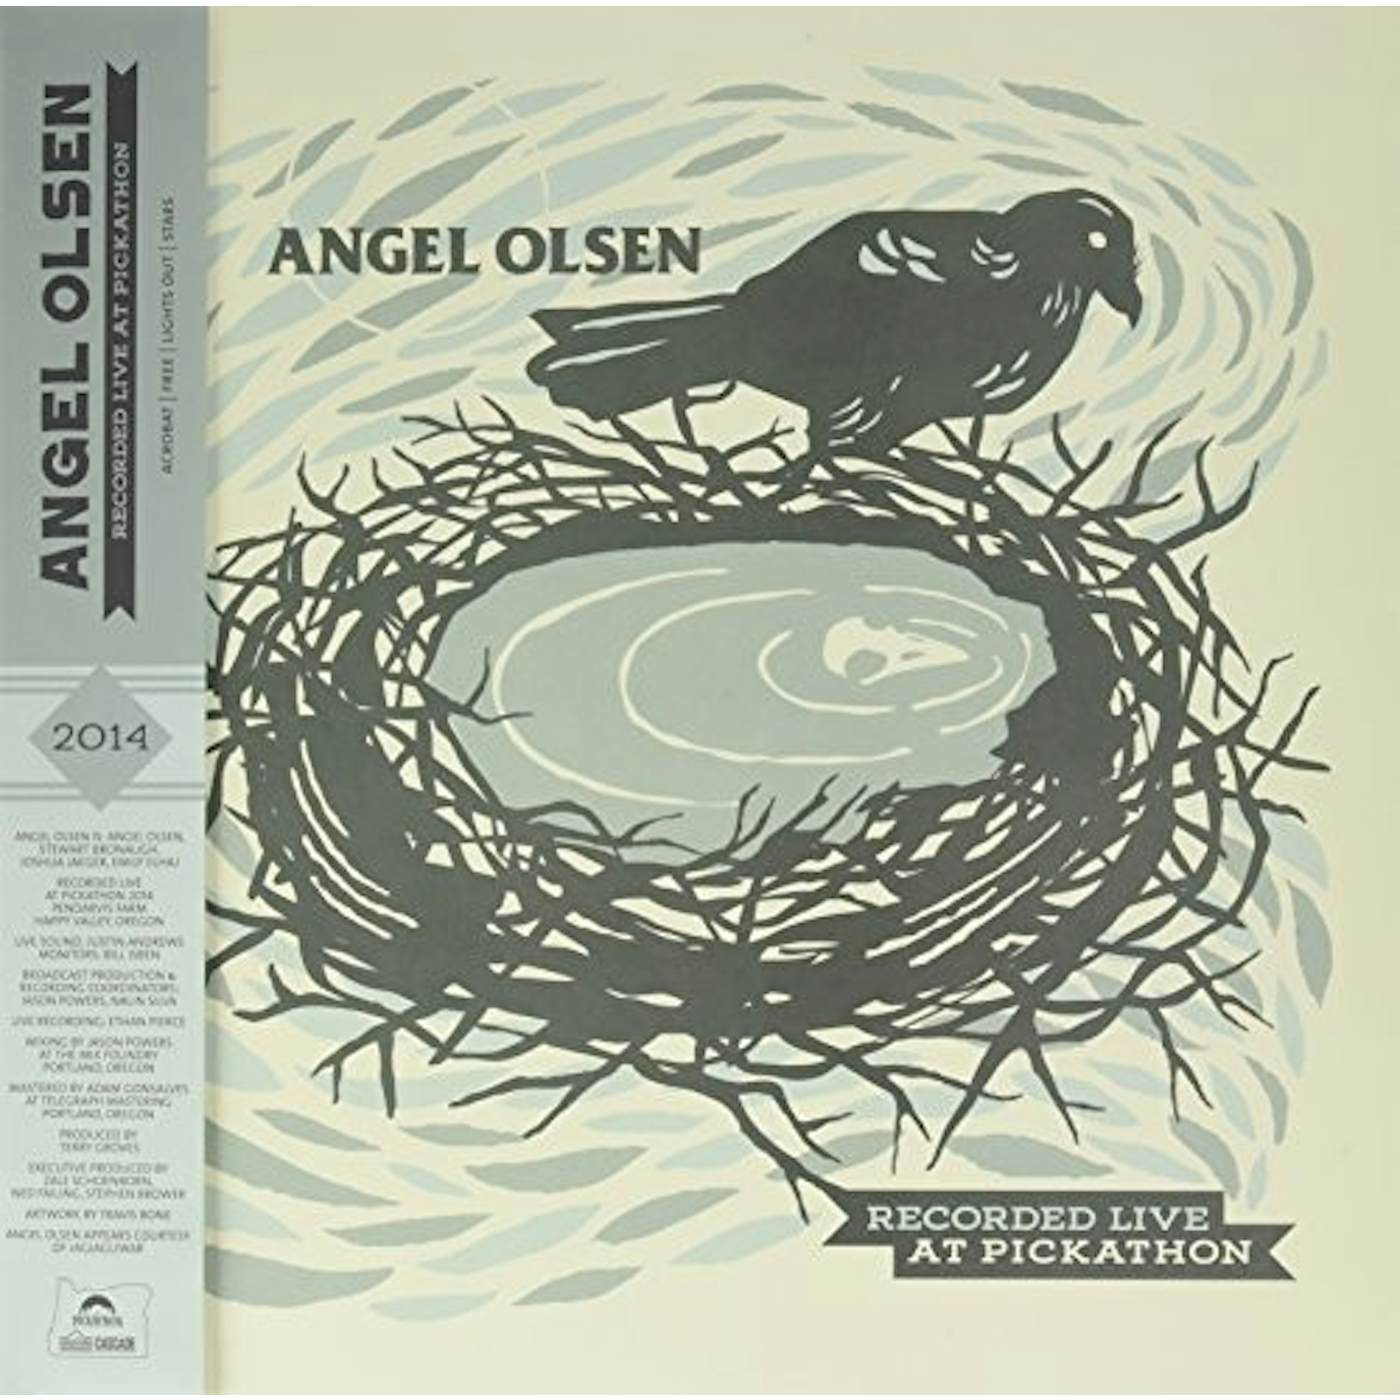 Ange Olsen / Steve Gunn LIVE AT PICKATHON Vinyl Record